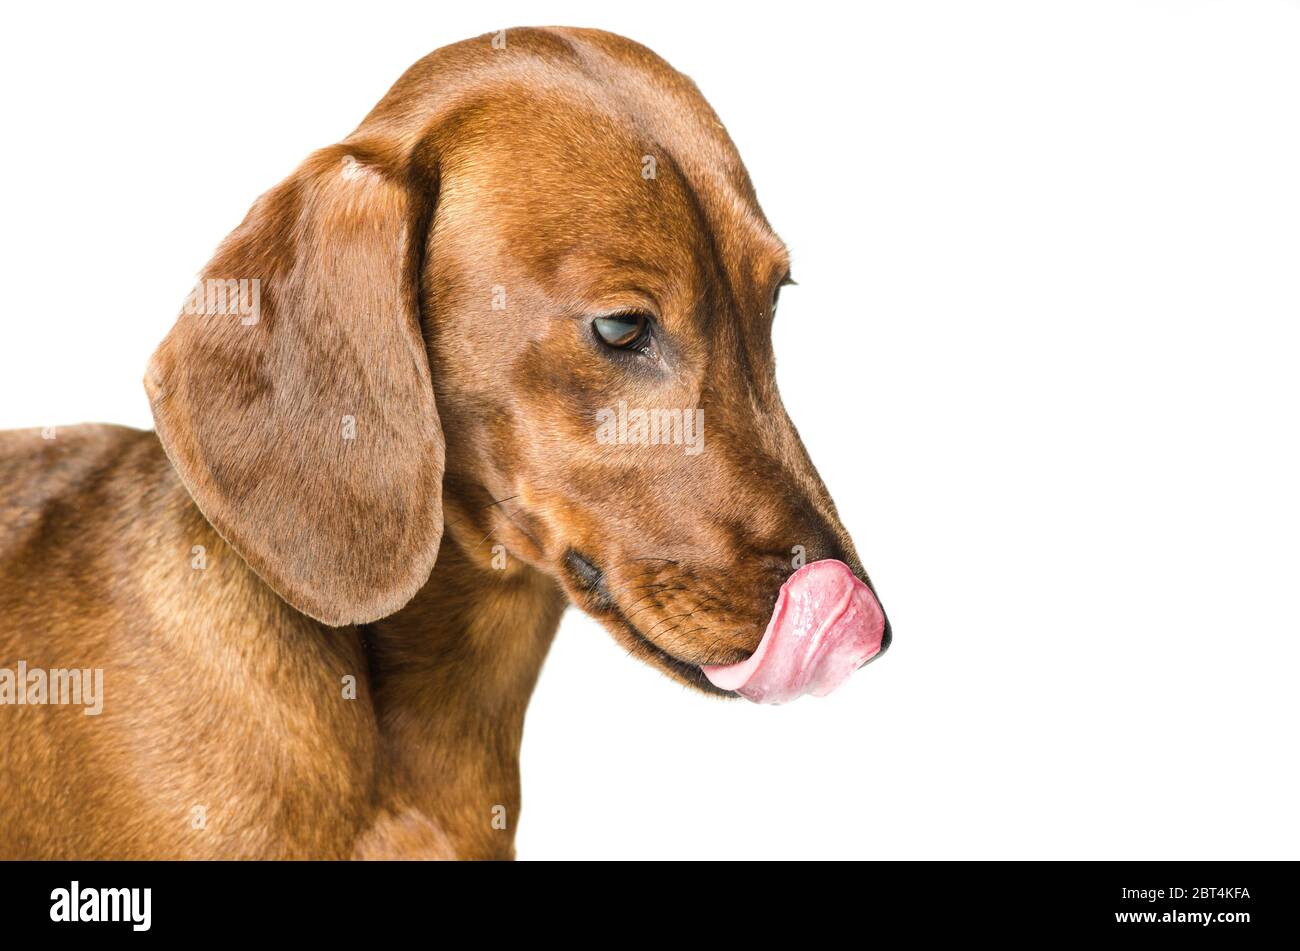 Perro salchicha cara fotografías e imágenes de alta resolución - Página 4 -  Alamy